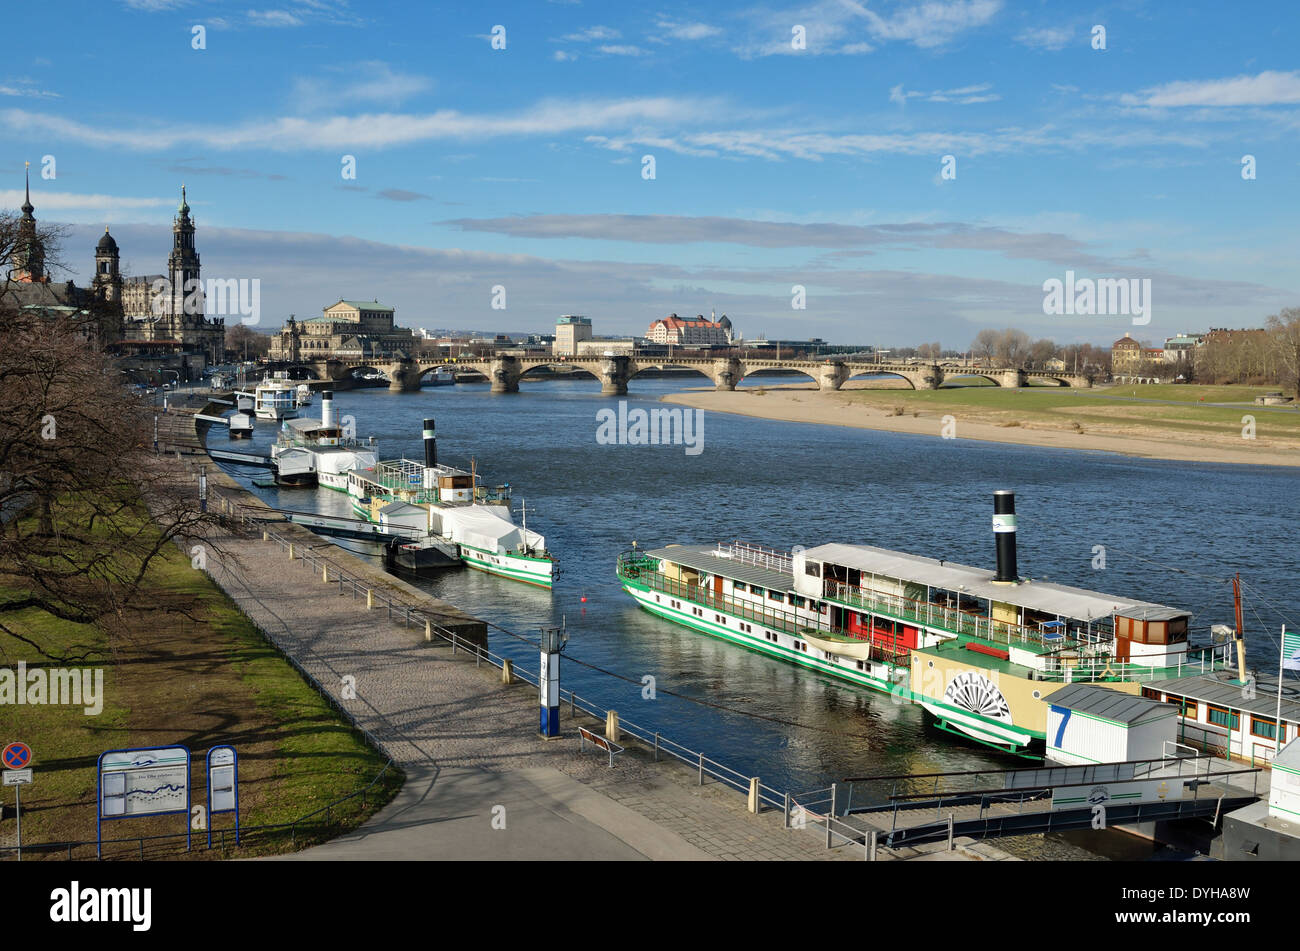 A Dresda, Schiffsanleger am Terrassenufer und Augustusbrücke Foto Stock